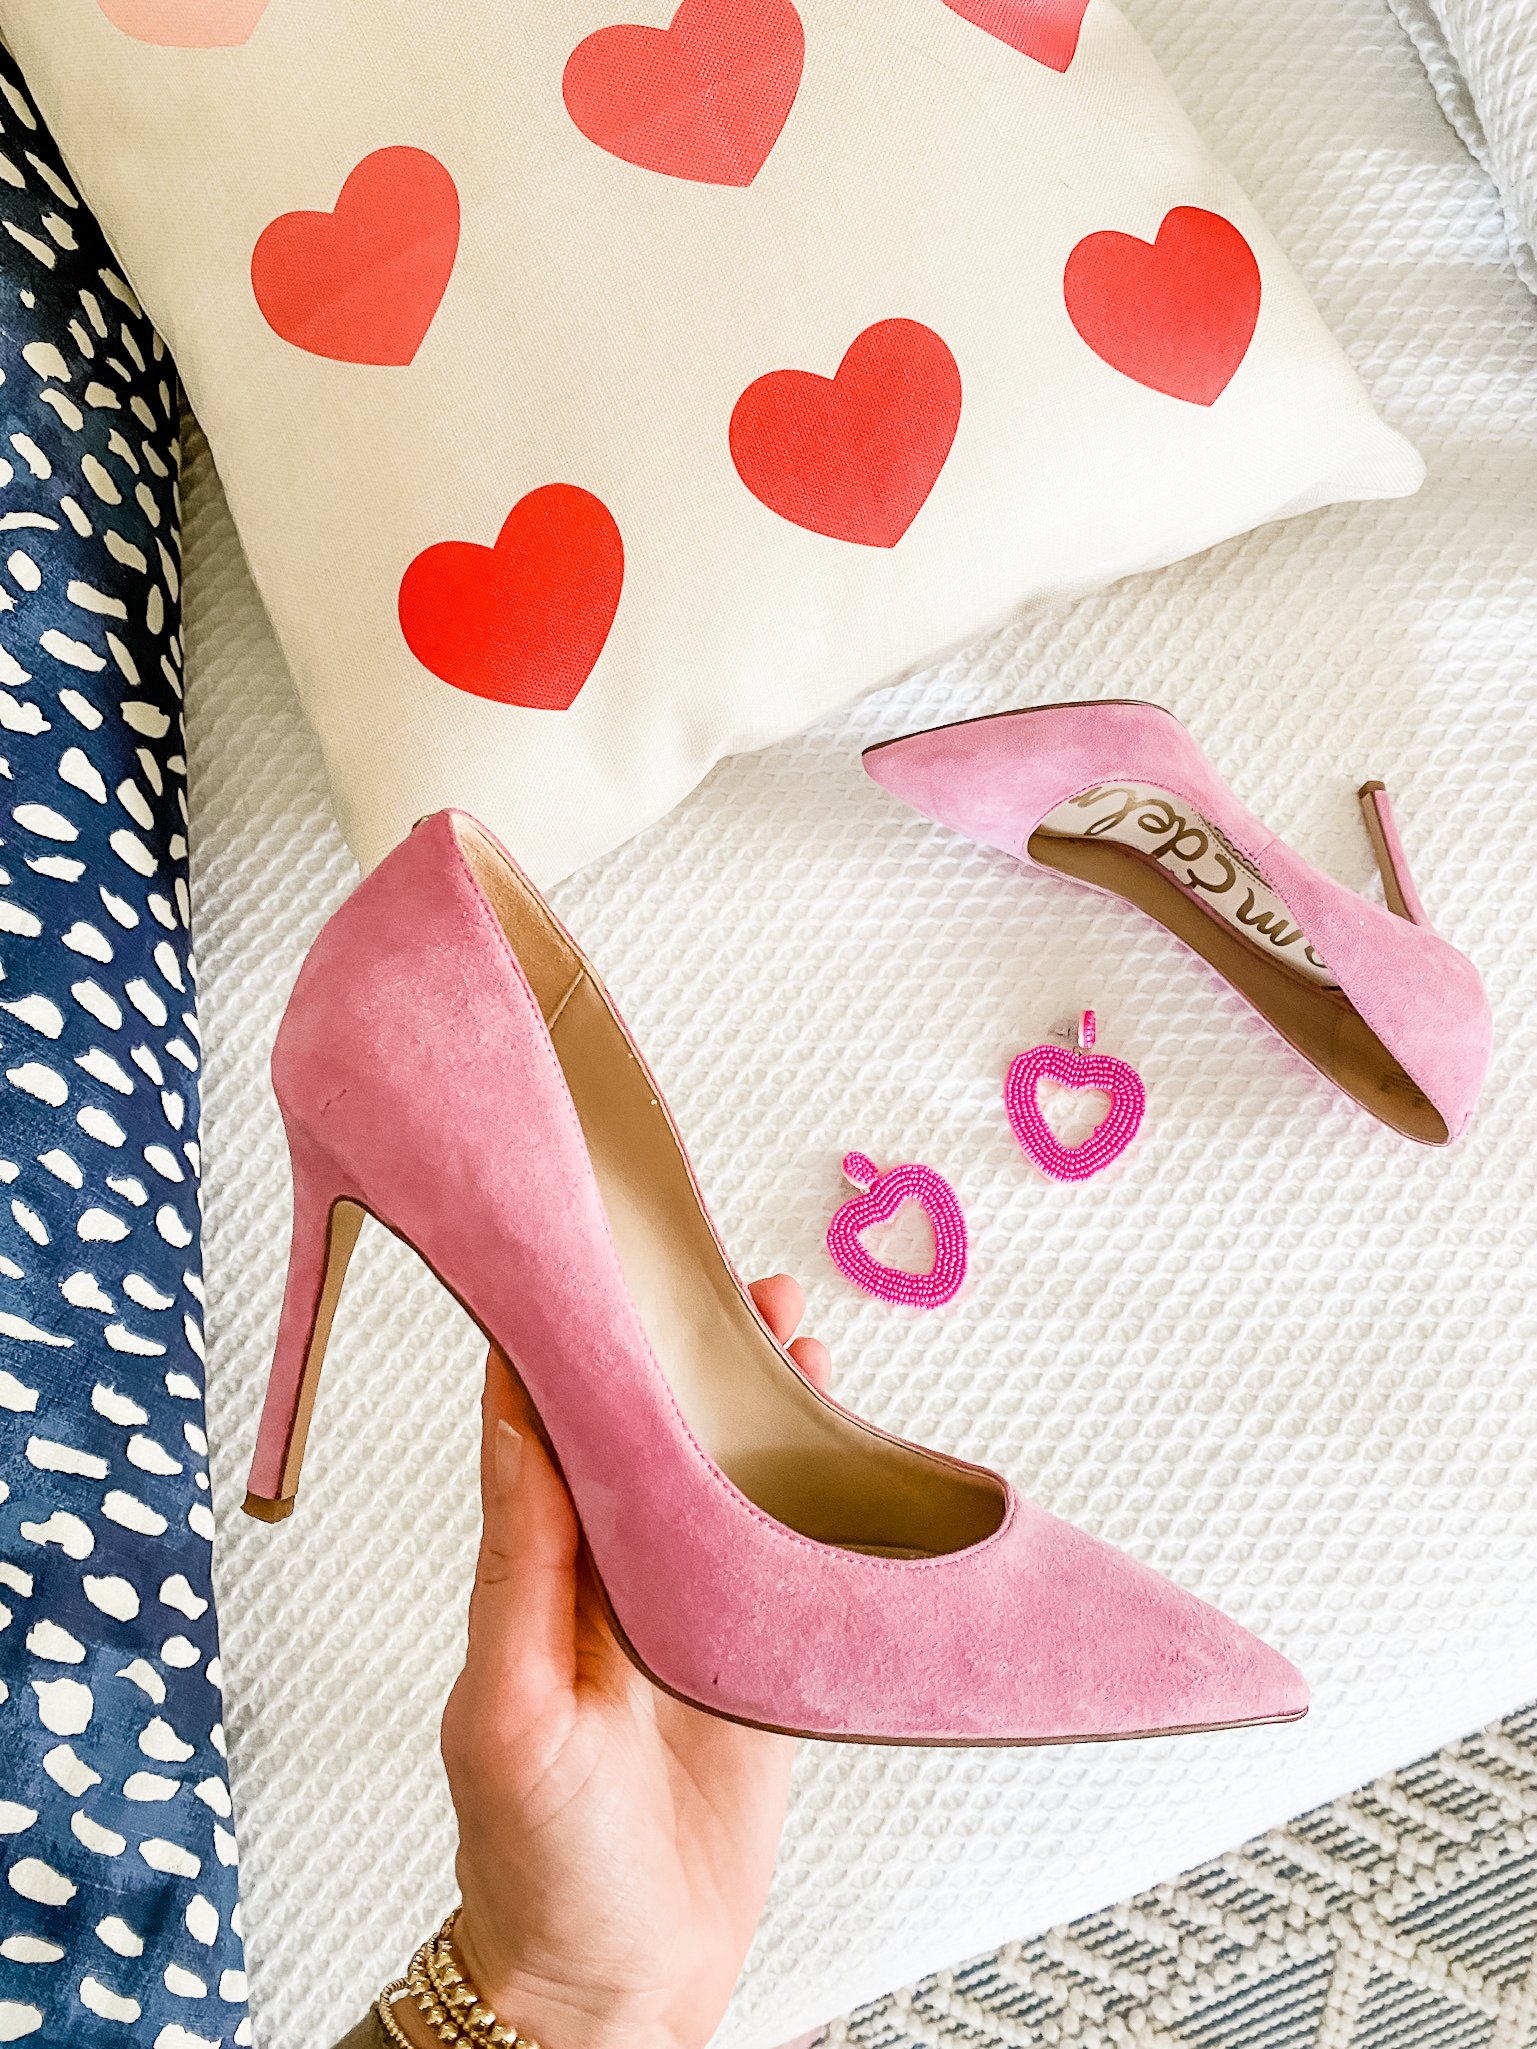 pink suede heels